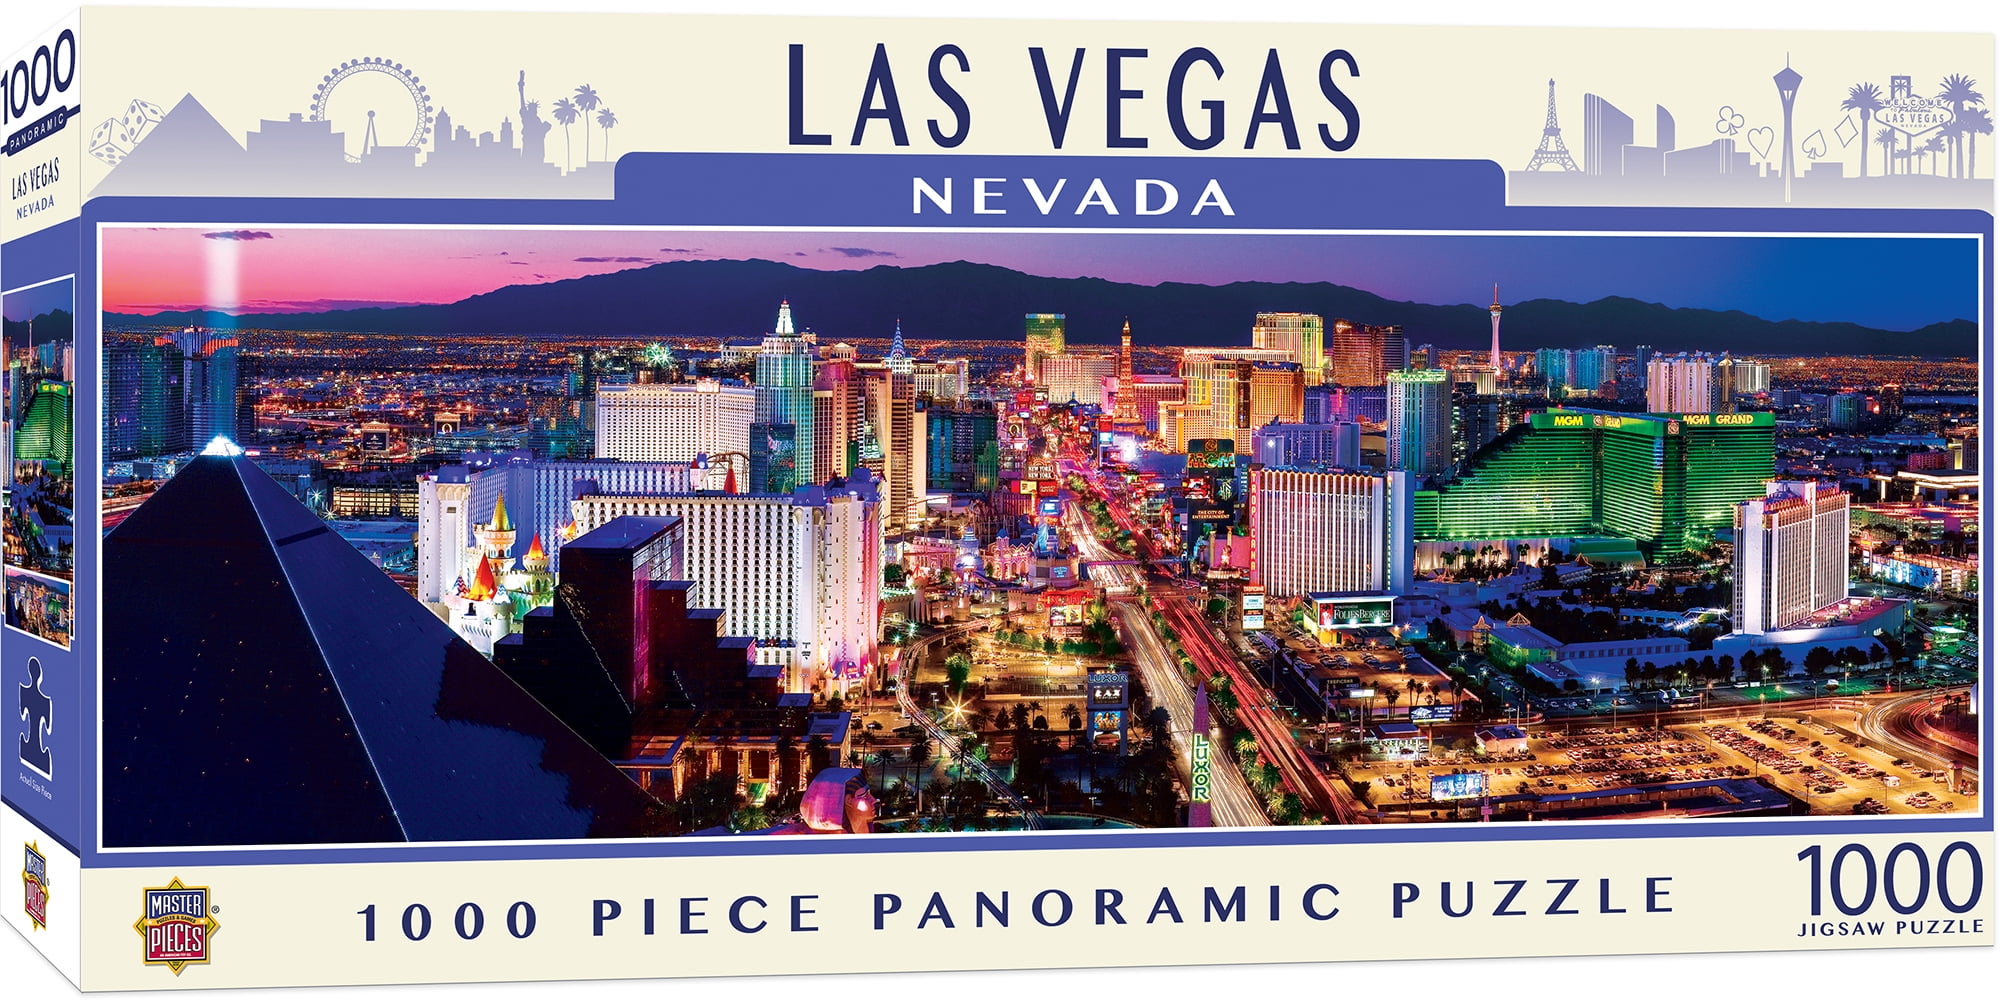 1000 Piece Comic Jigsaw Puzzle Las Vegas The Strip Casinos Nevada America 05201 